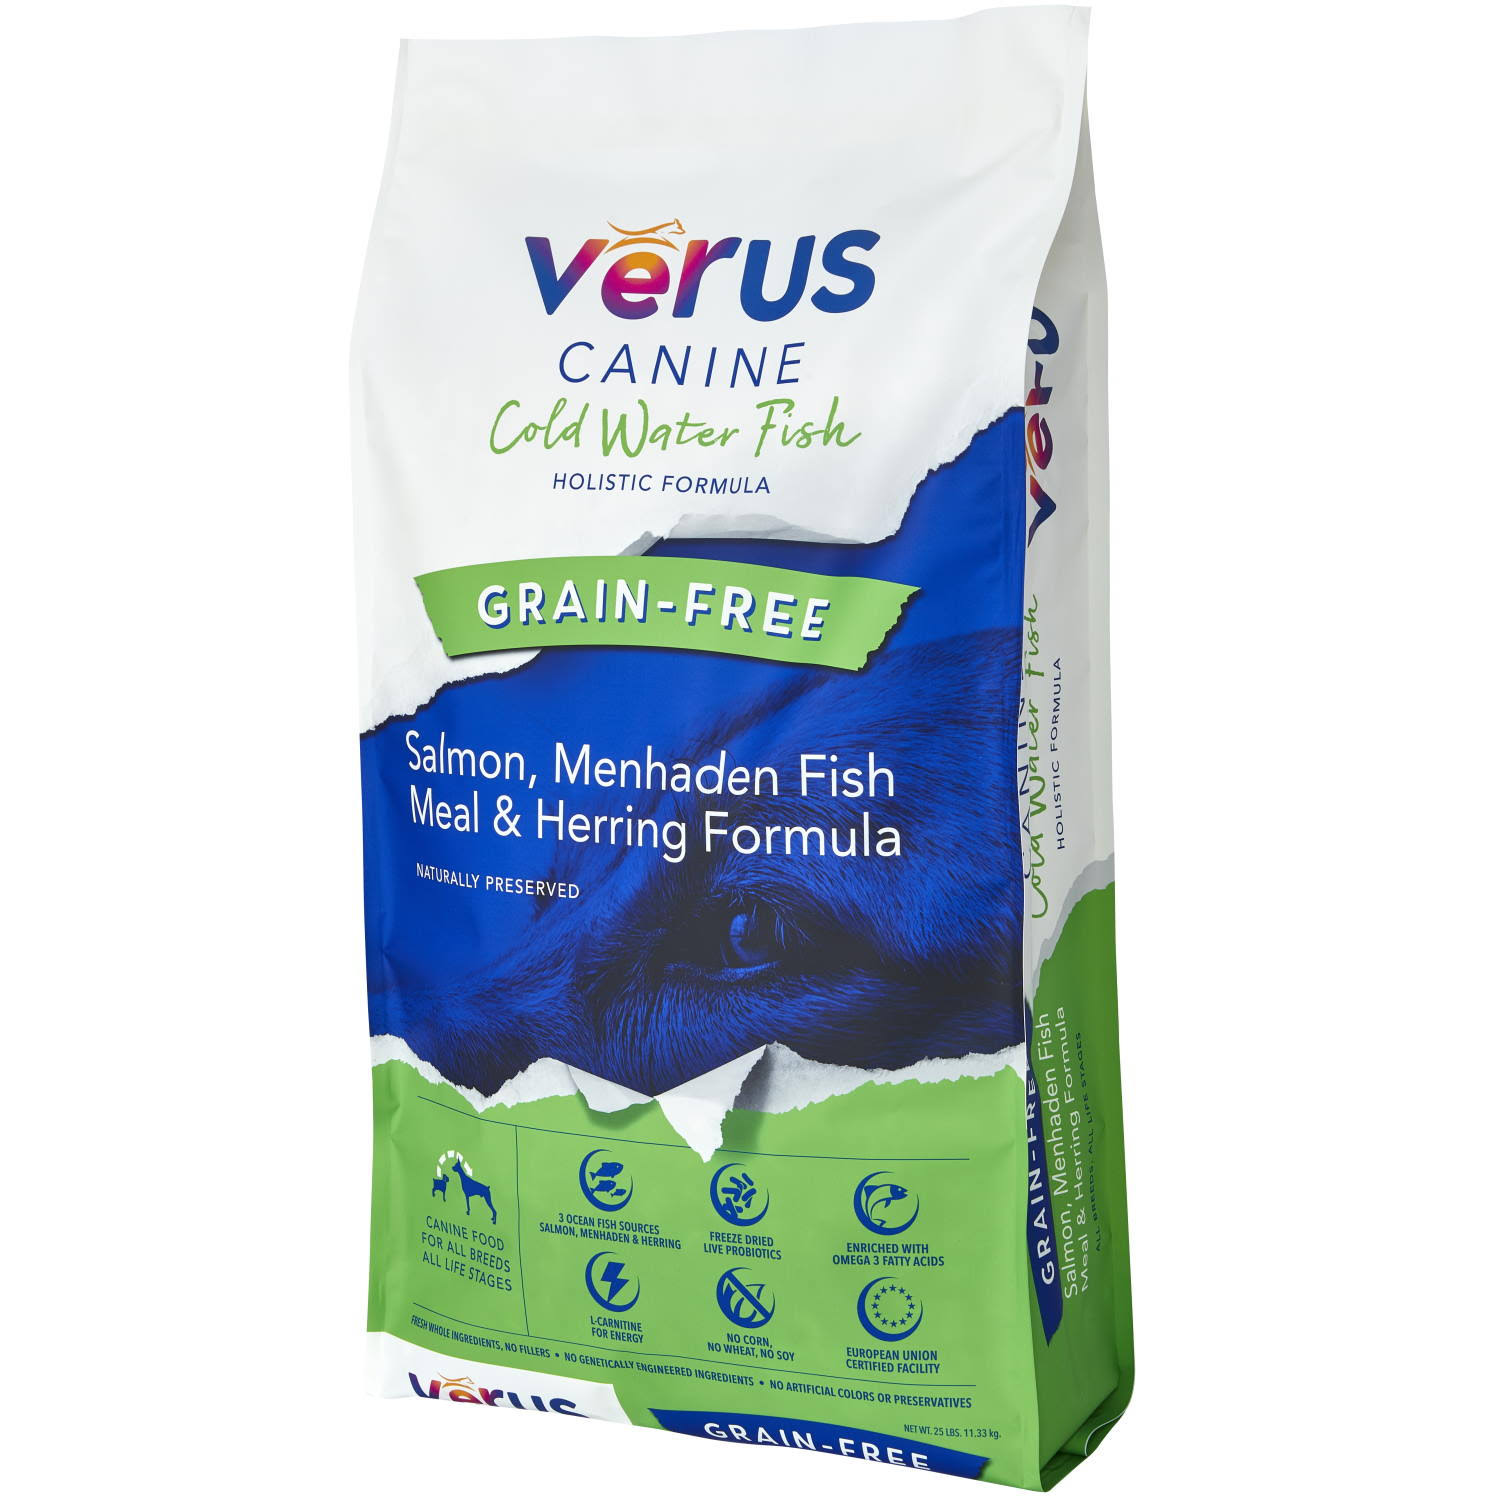 Verus Grain Free Cold Water Fish Salmon, Menhaden Fish Meal & Herring Recipe Dry Dog Food - 25 lb Bag